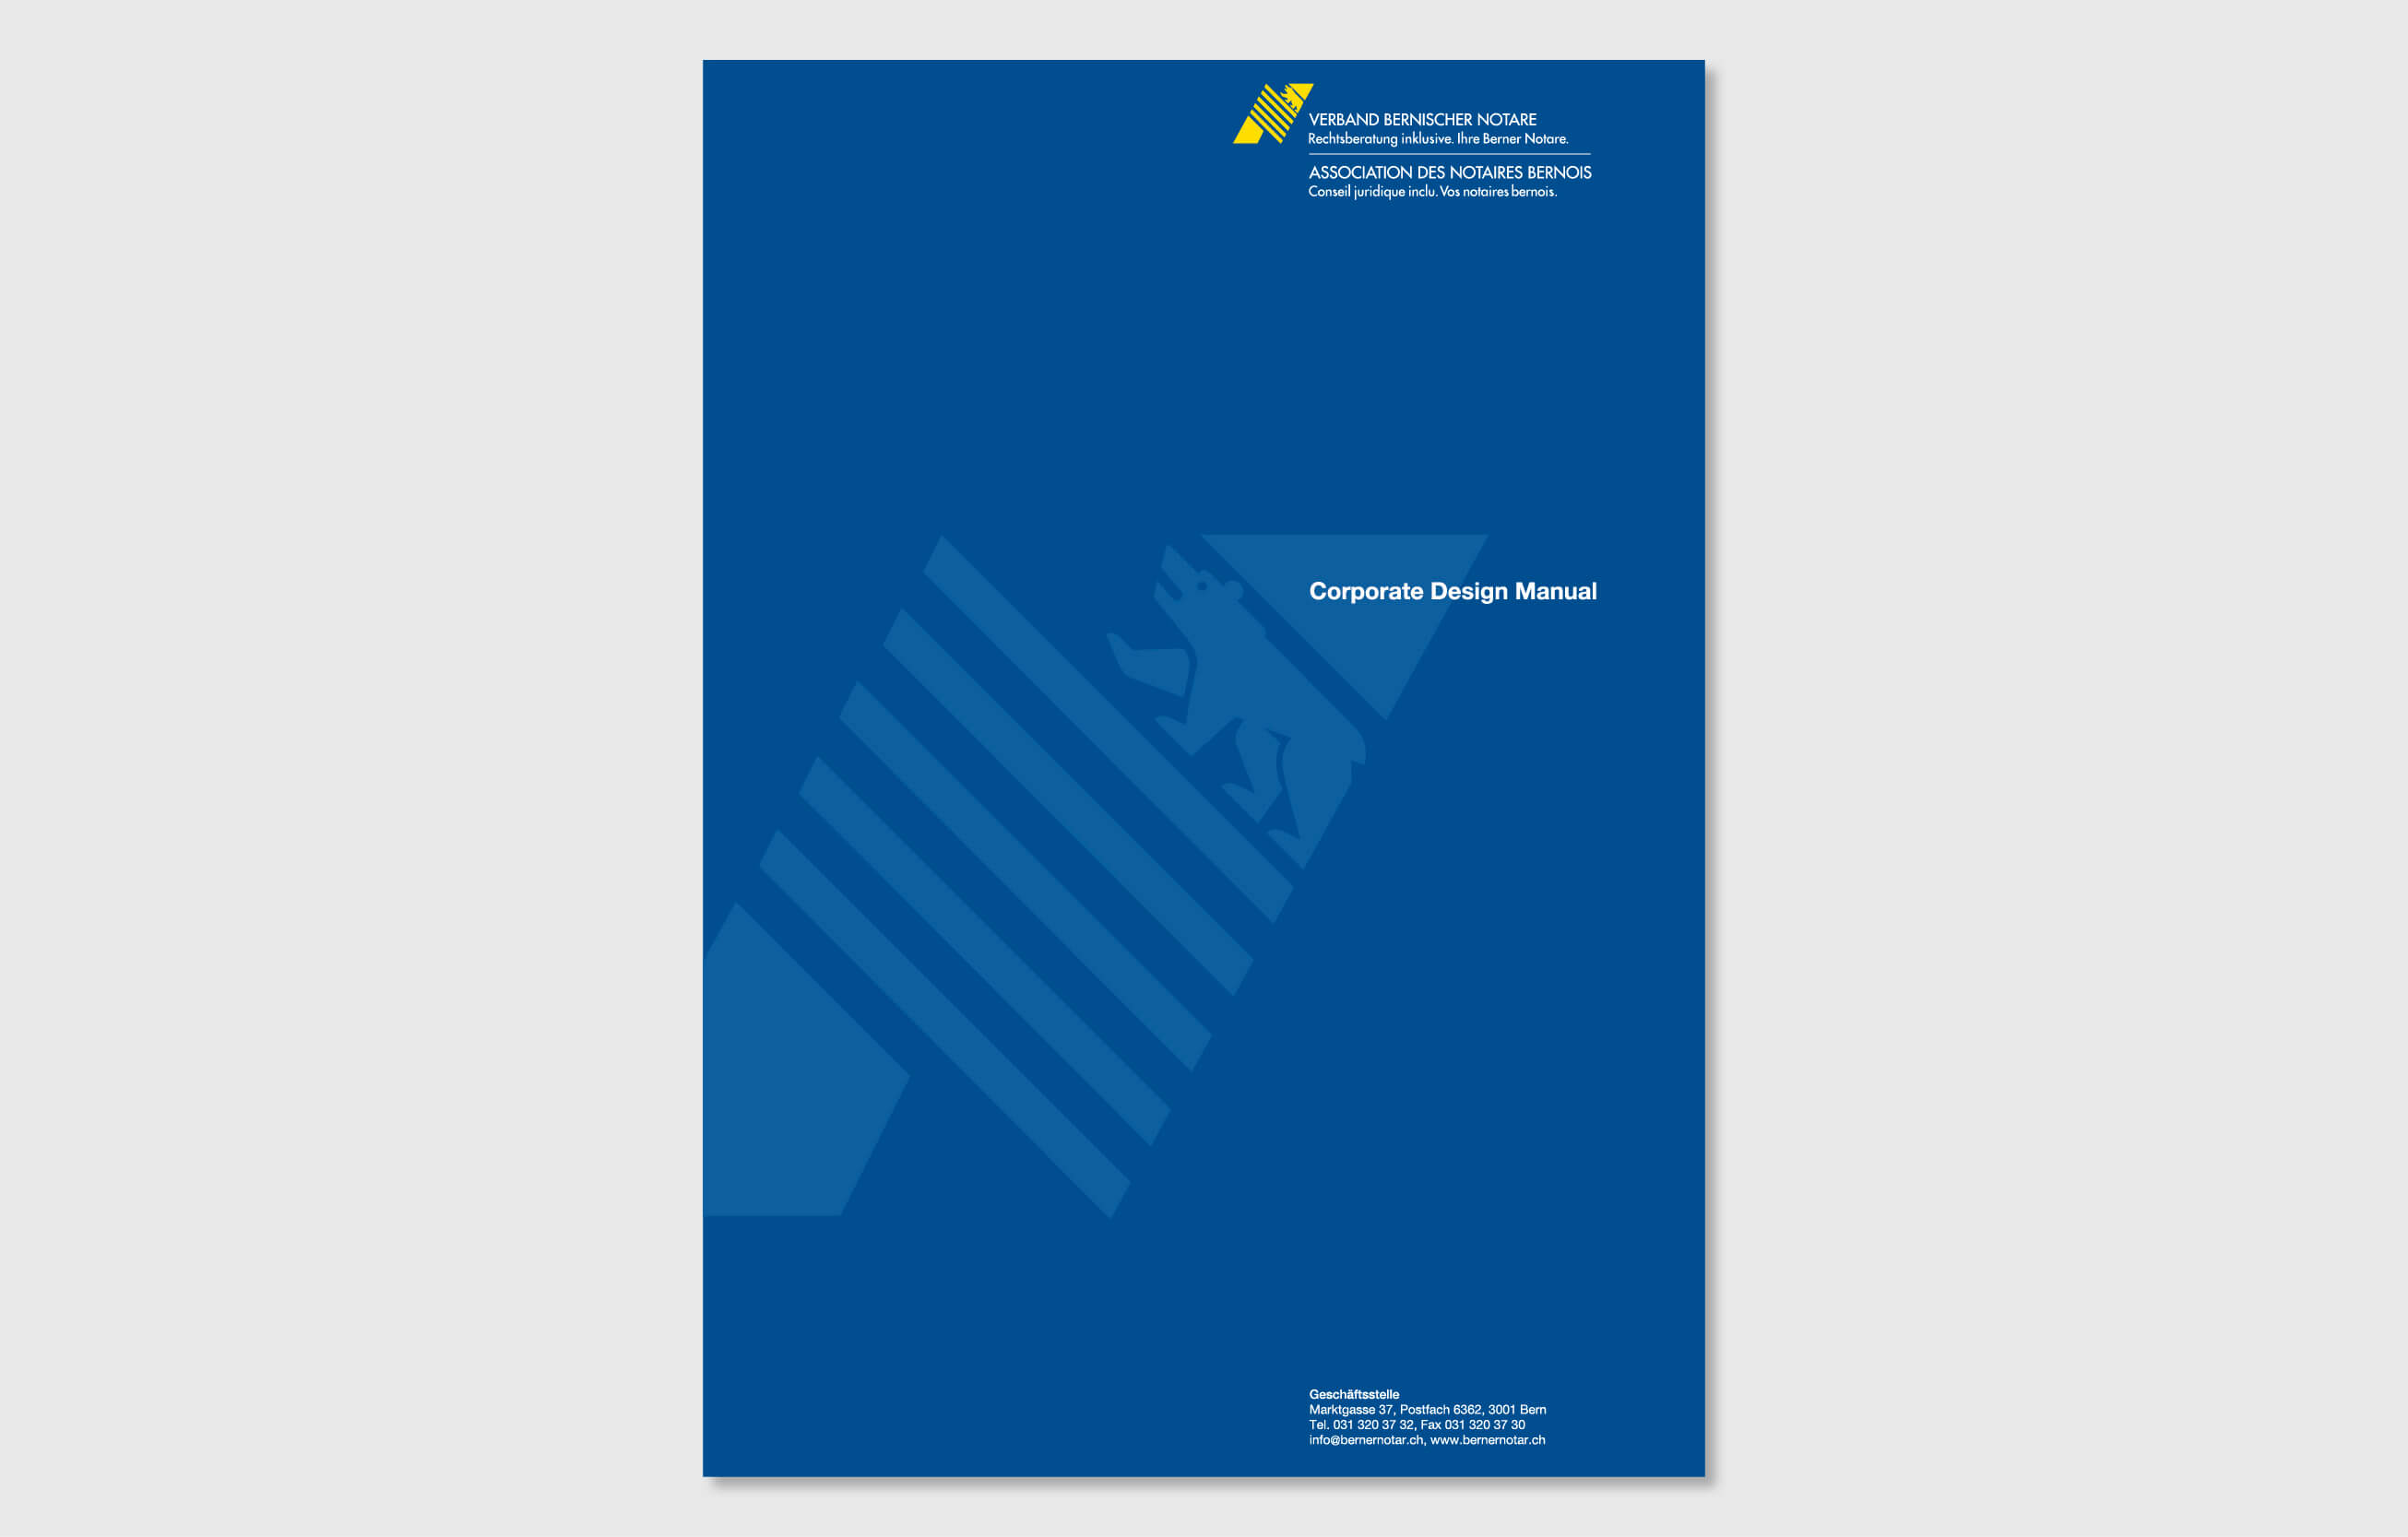 Verband bernischer Notare Corporate Design by consign | Agentur für Branding und Kommunikation Manual